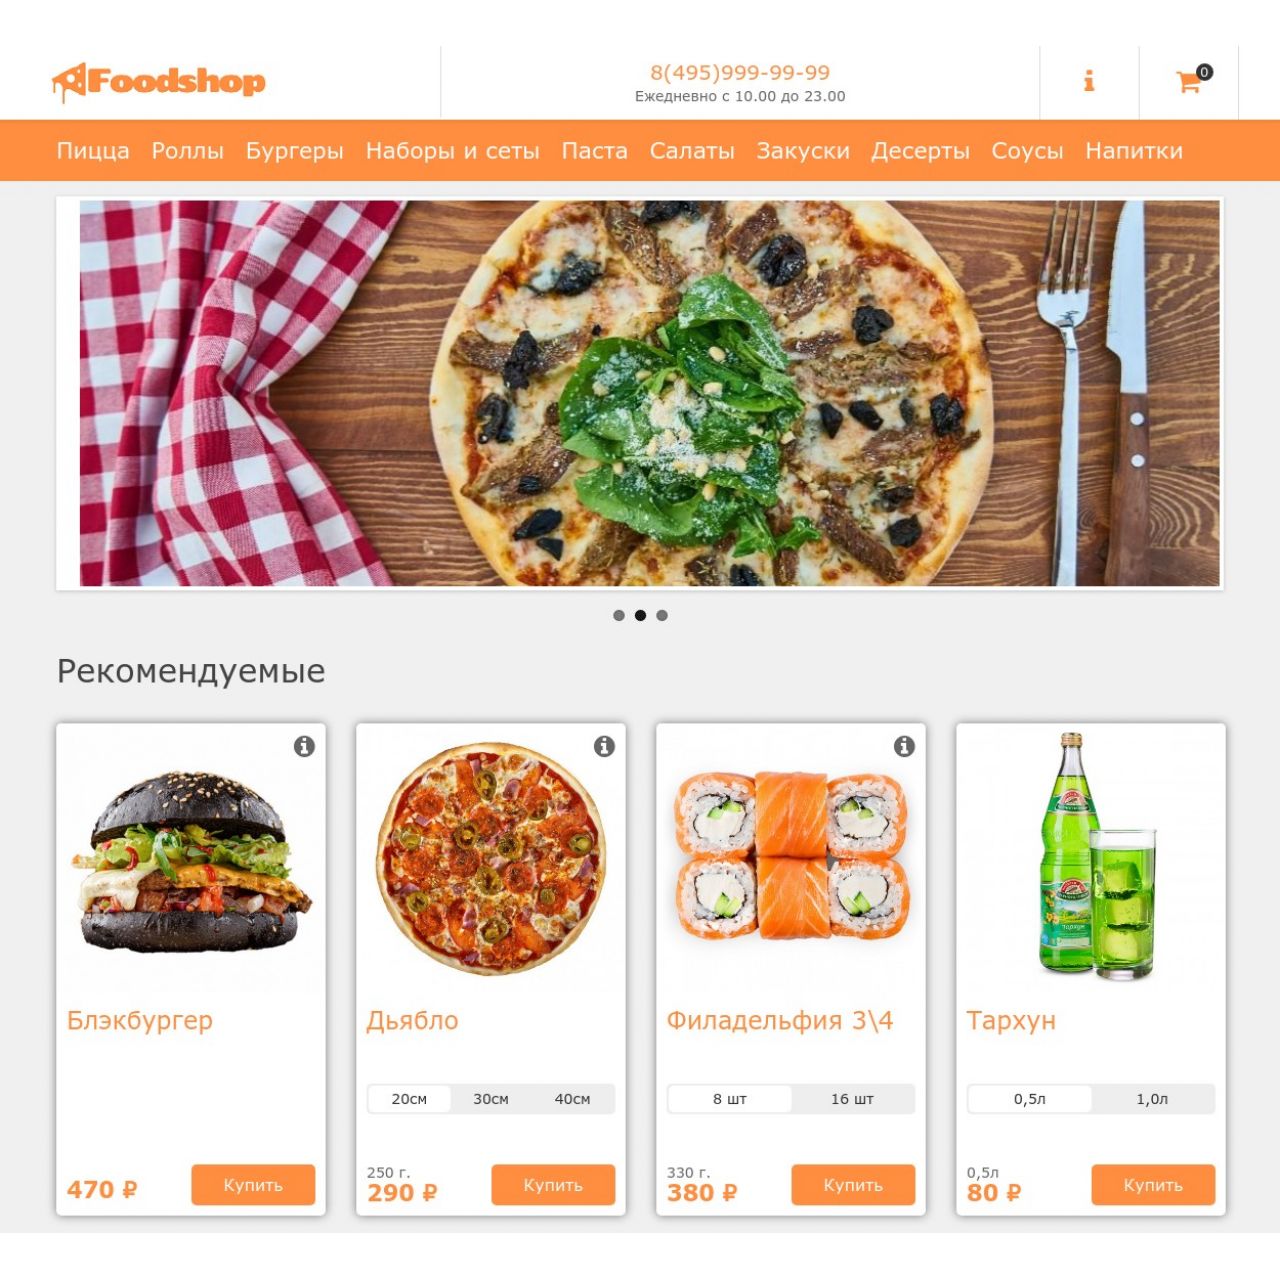 FoodShop - шаблон доставки еды из категории Шаблоны для CMS OpenCart (ОпенКарт)